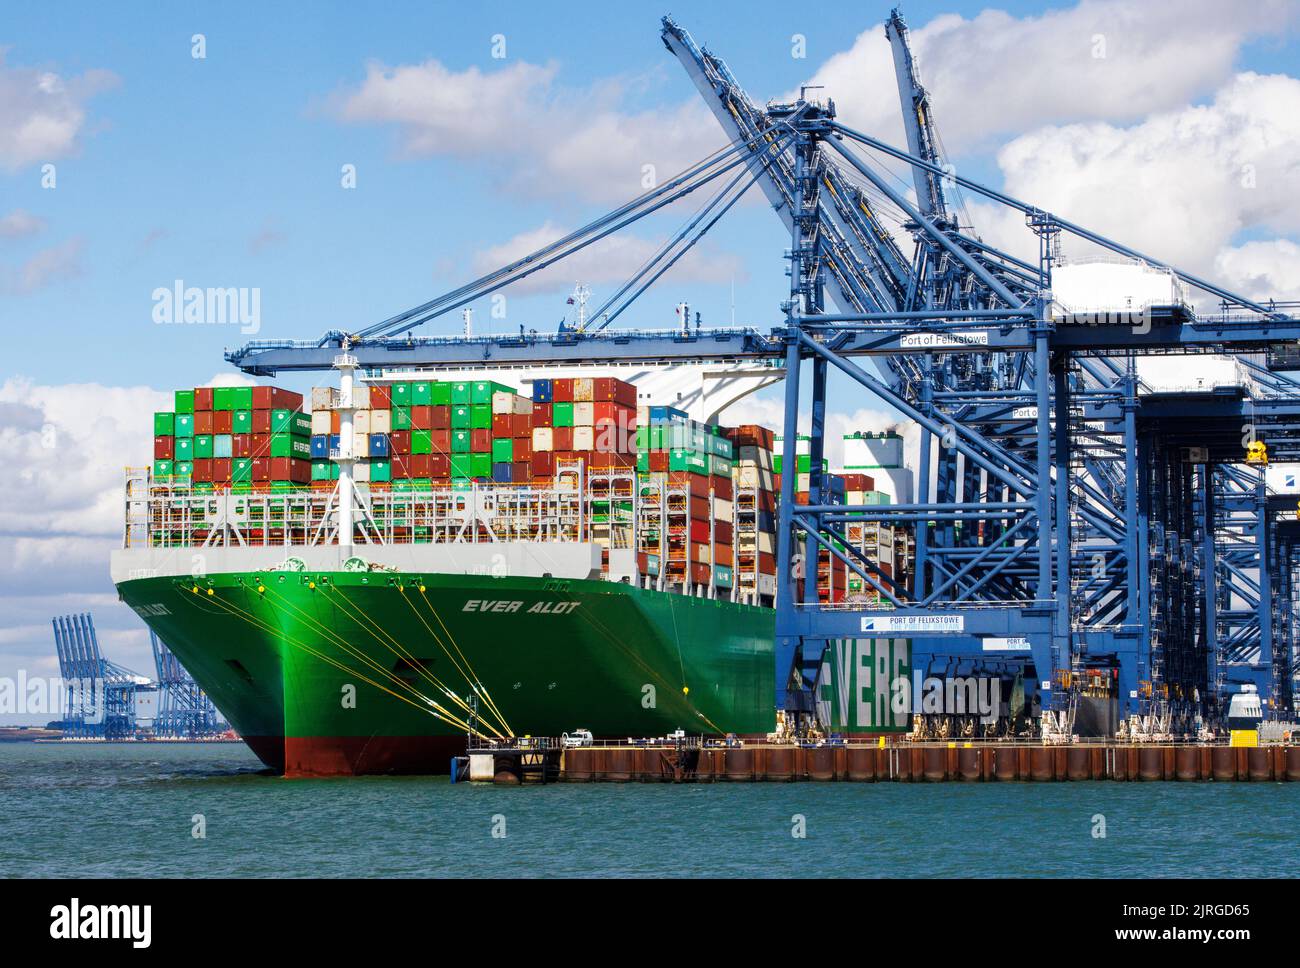 Felixstowe, Regno Unito 24 ago 2022 l'alot è ormeggiato alle banchine di Felixstowe. È la più grande nave container del mondo. I banchieri sono in sciopero su problemi di retribuzione in modo che i contenitori non possono essere scaricati fino a quando il problema non è risolto. Hudong-Zhonghua Shipbuilding Group Co. (Hudong-Zhonghua), una filiale della China state Shipbuilding Corporation (CSSC), ha costruito e consegnato il più grande numero di containers al mondo alla compagnia di navigazione taiwanese Evergreen Marine. La nave alot ha una capacità di carico di 24.004 TEU e misura 400 metri di lunghezza per 61,5 metri di larghezza, con un pescaggio di 17 metri. Il gigante Foto Stock